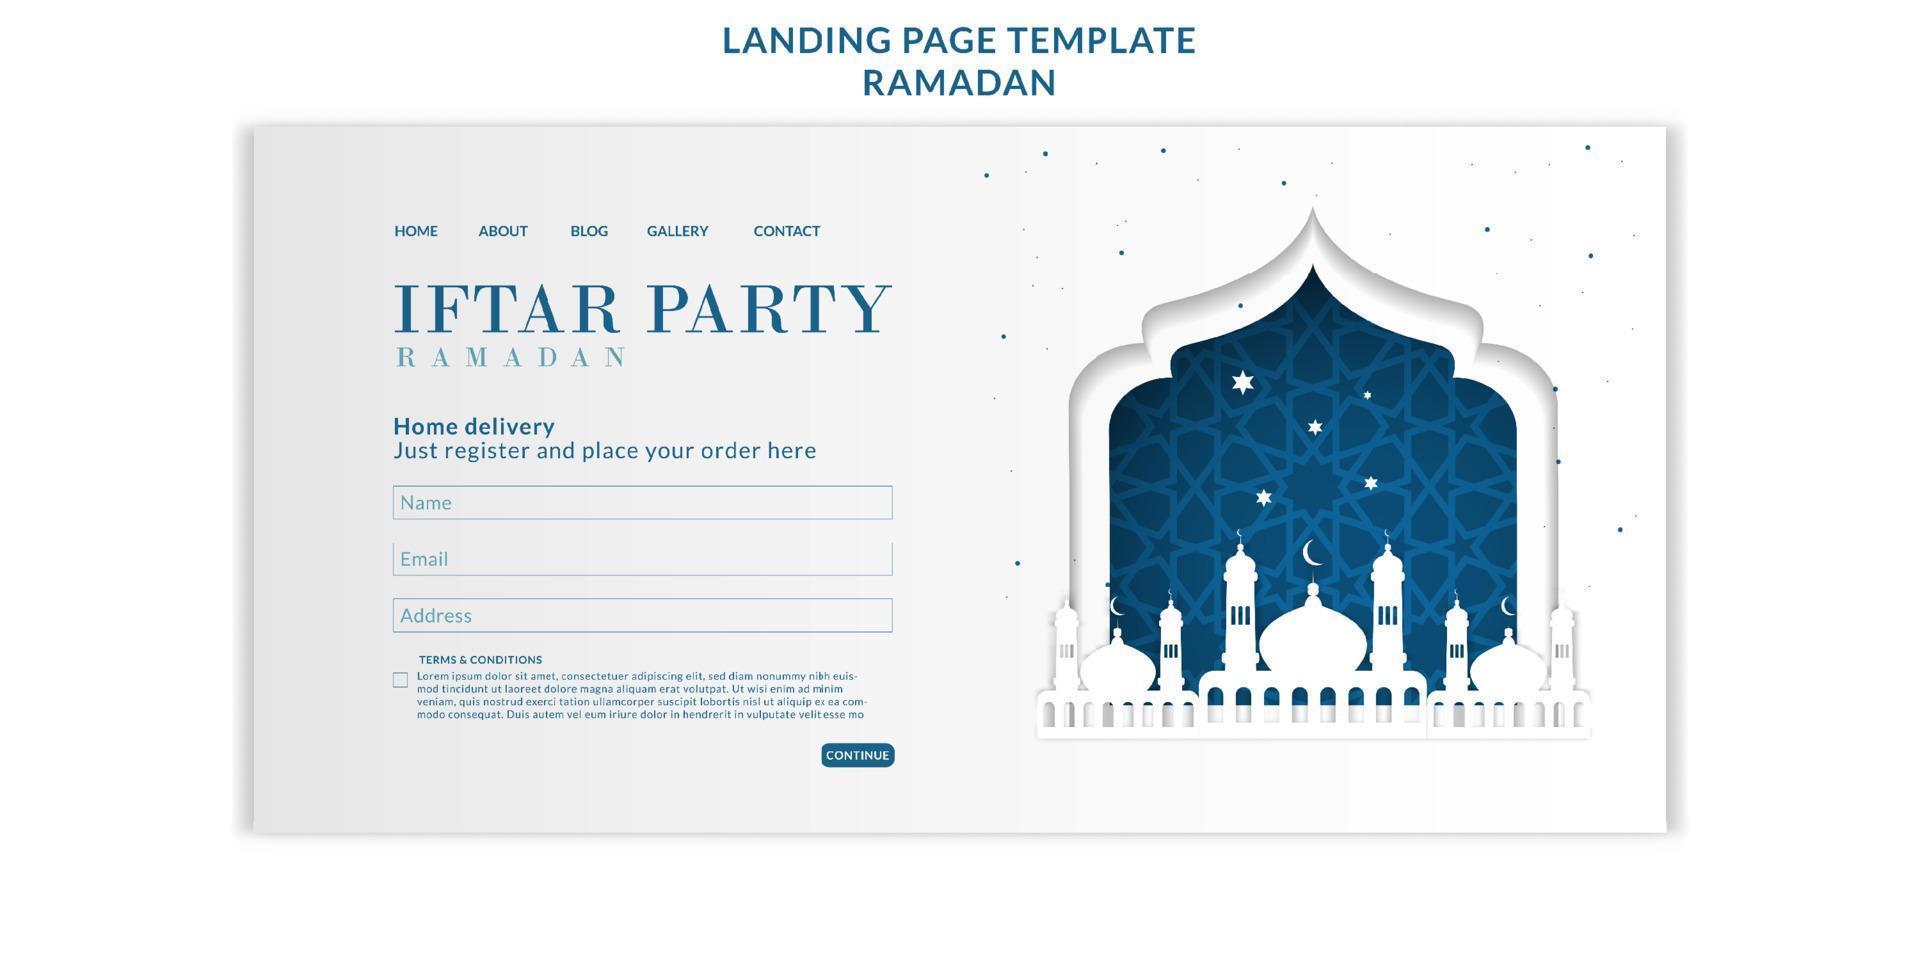 fond de ramadan kareem islamique avec mandala et ornement. illustration vectorielle vecteur